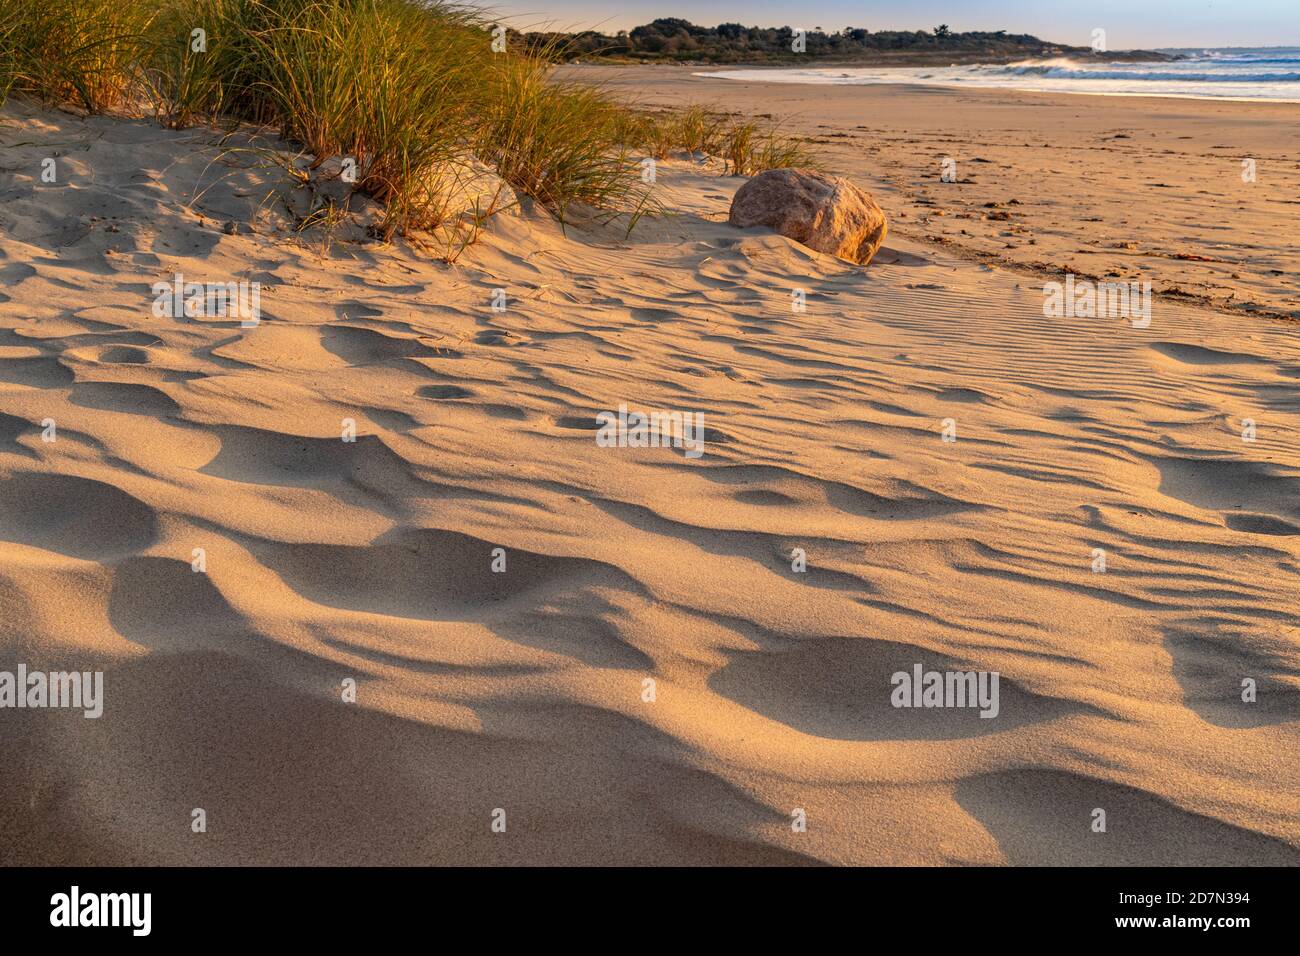 Motifs de dunes de sable, Narragansett, Rhode Island USA Banque D'Images